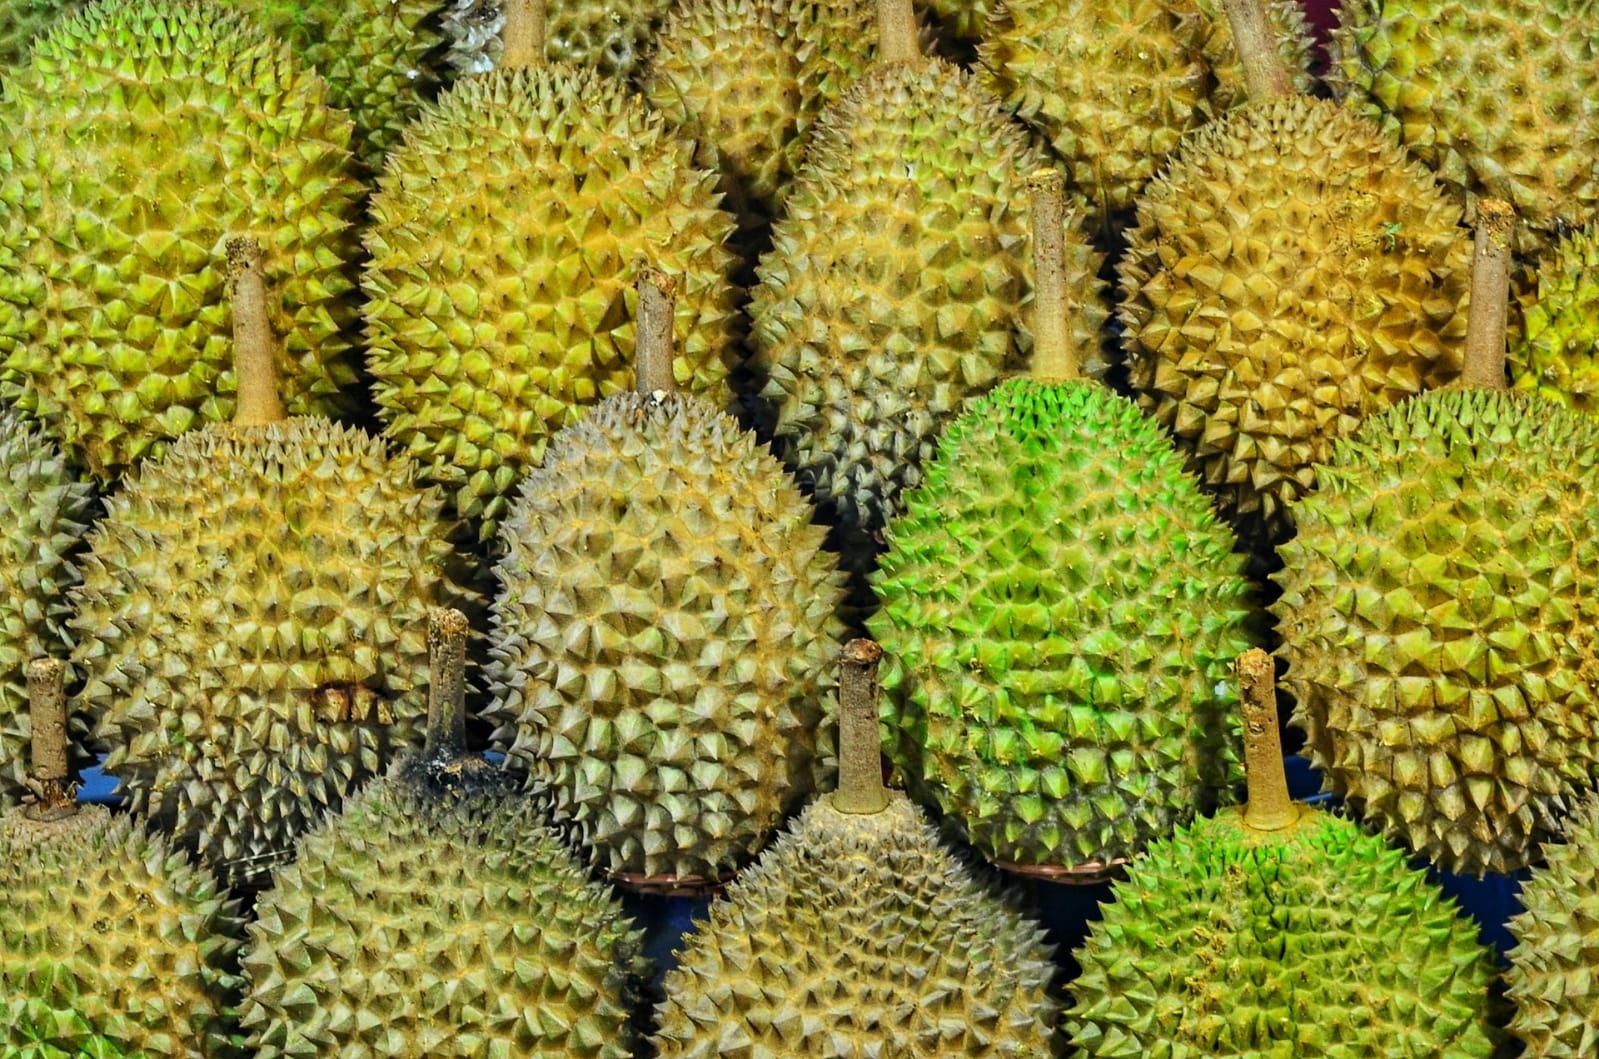 Manfaat Buah Durian dan Efek Sampingnya